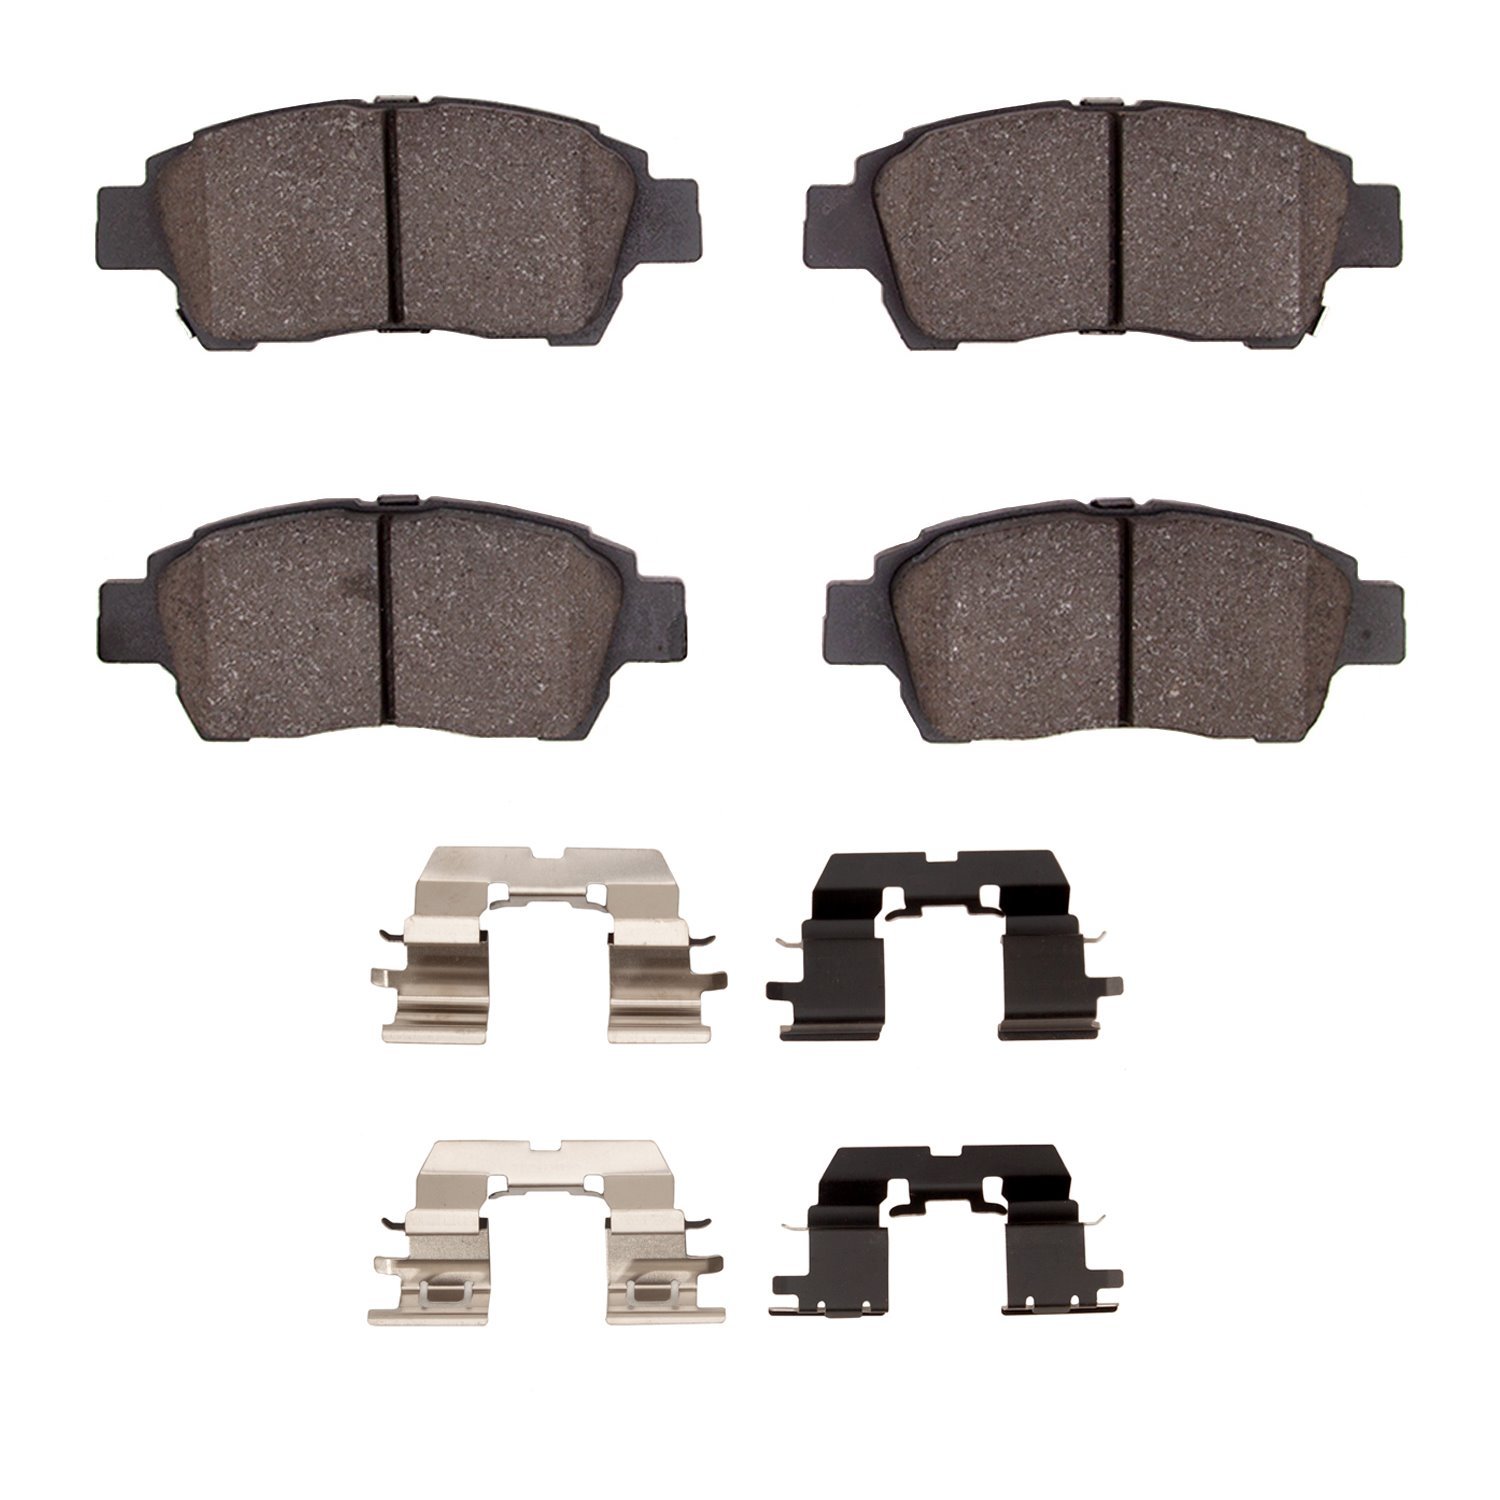 1310-0831-01 3000-Series Ceramic Brake Pads & Hardware Kit, 2000-2000 Lexus/Toyota/Scion, Position: Front